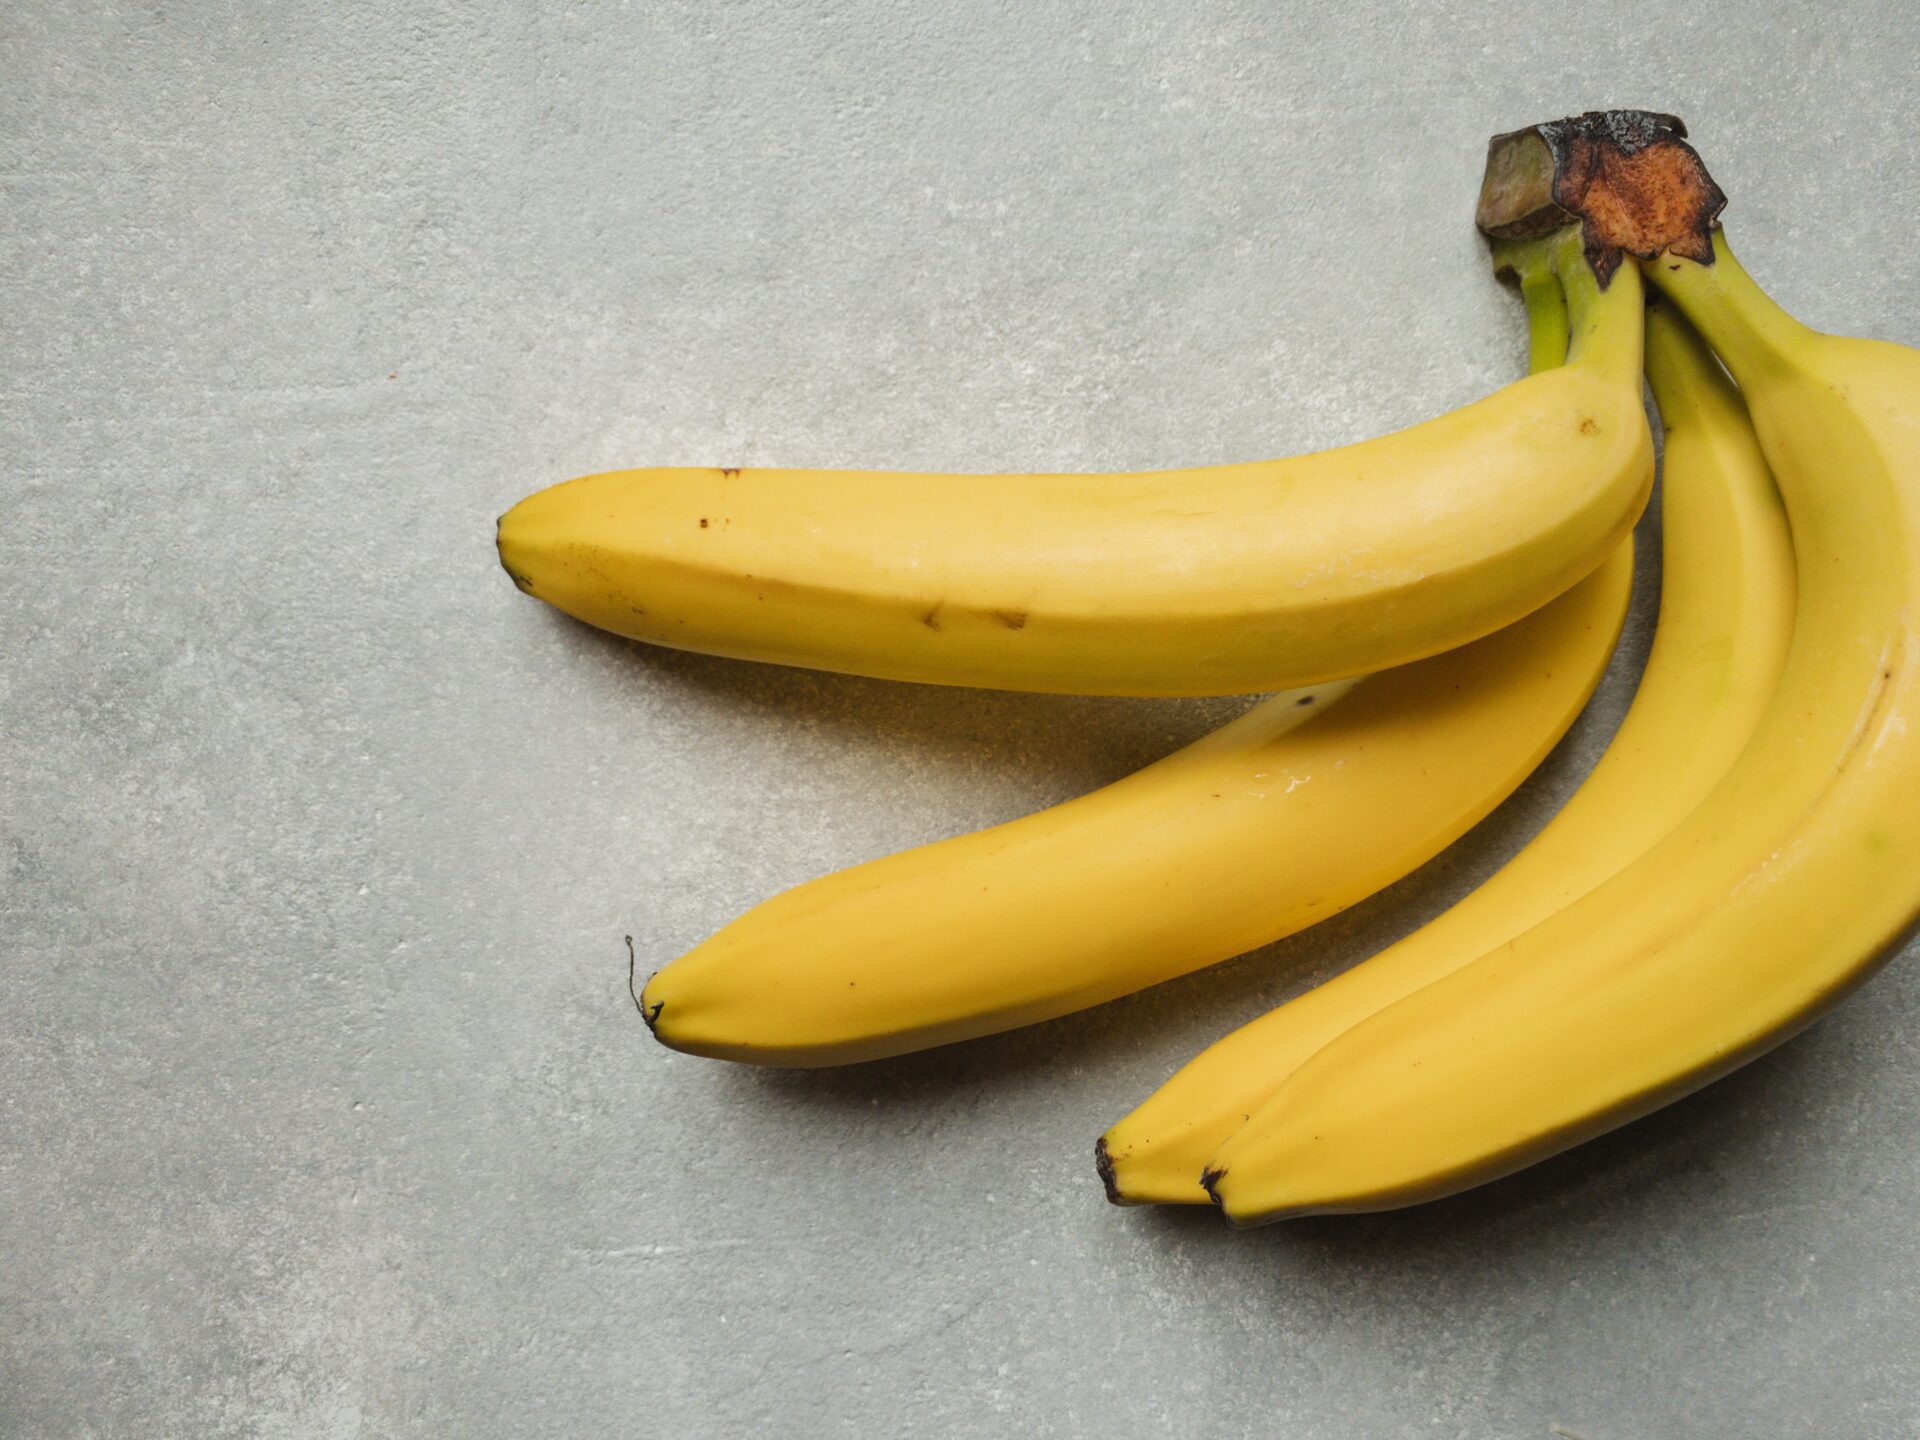 Demagog rujnuje faktoidy: końcówki bananów